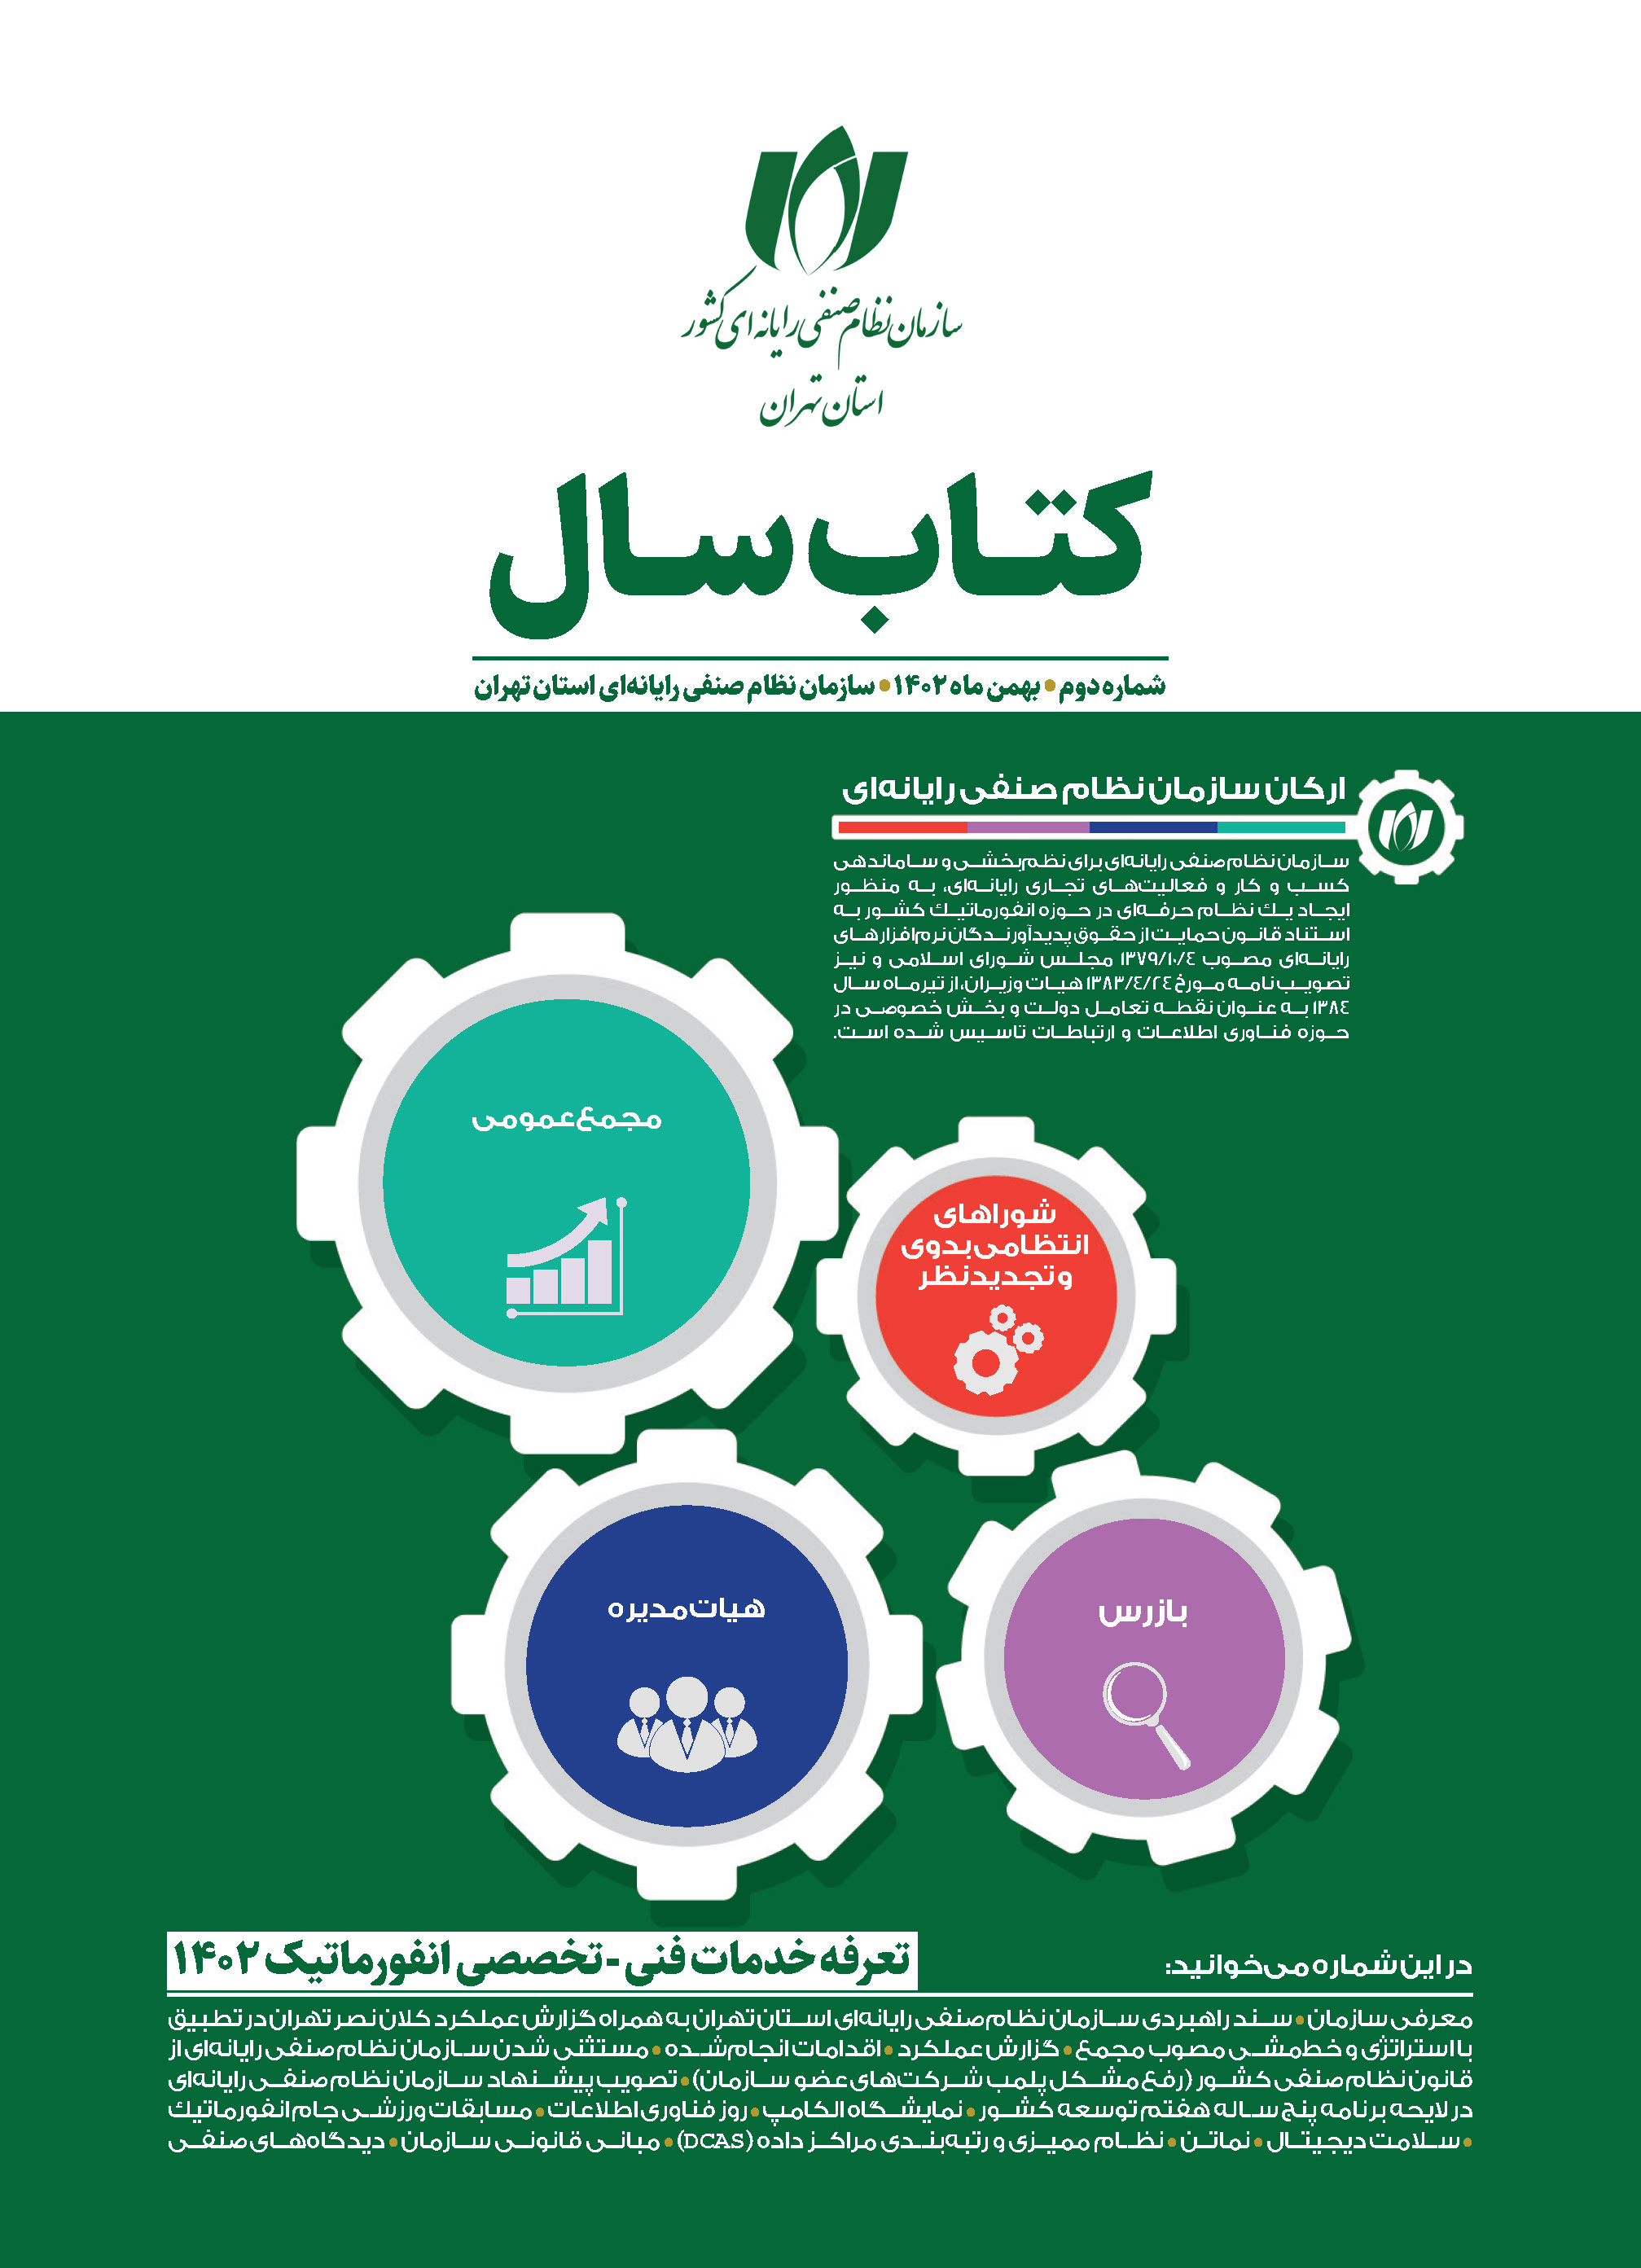 دومین شماره کتاب سال سازمان نصر تهران منتشر شد